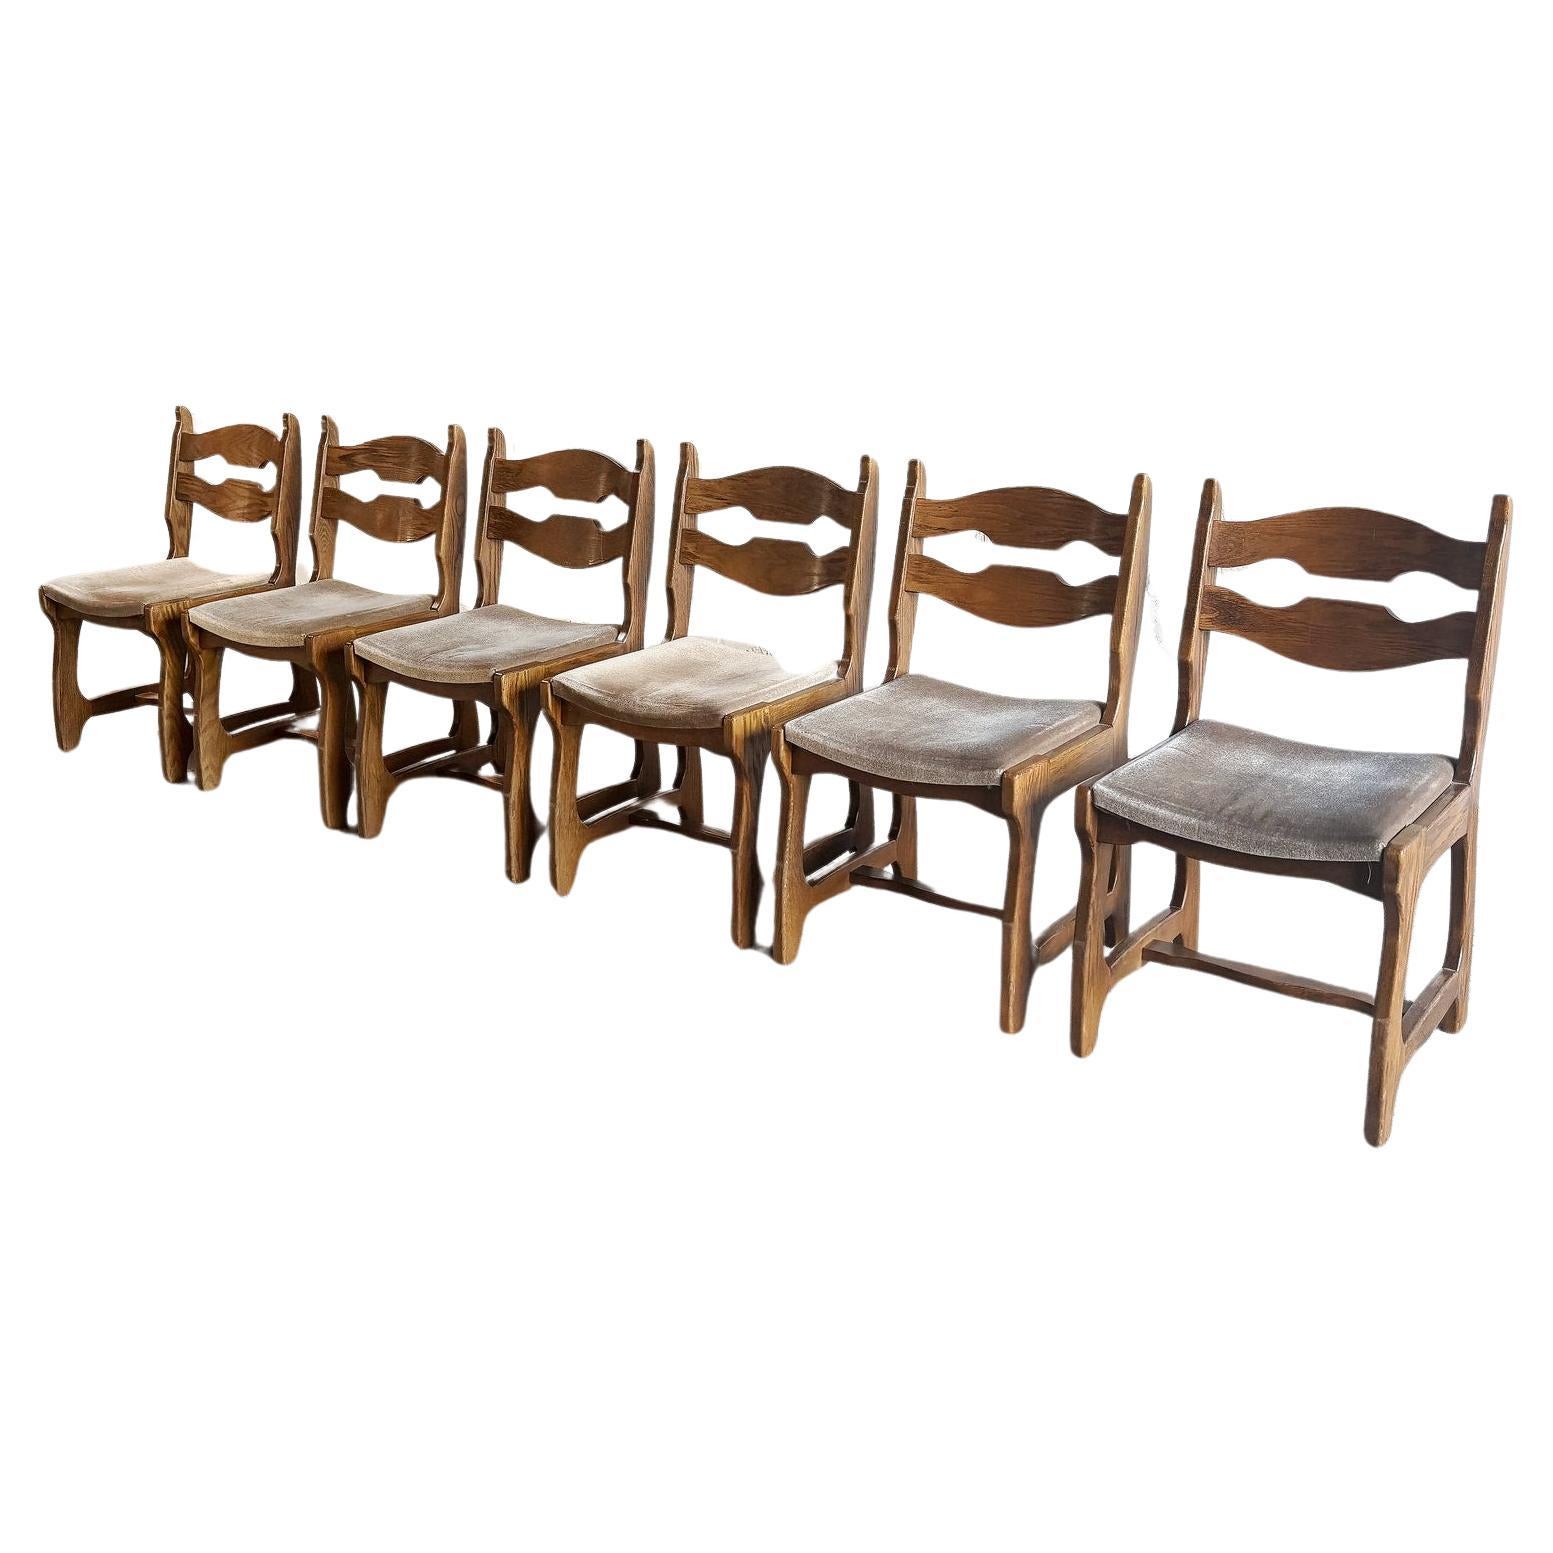 Esszimmerstühle aus Holz und Stoff von Guillerme Et Chambron, 1950er Jahre, 6er-Set, Set